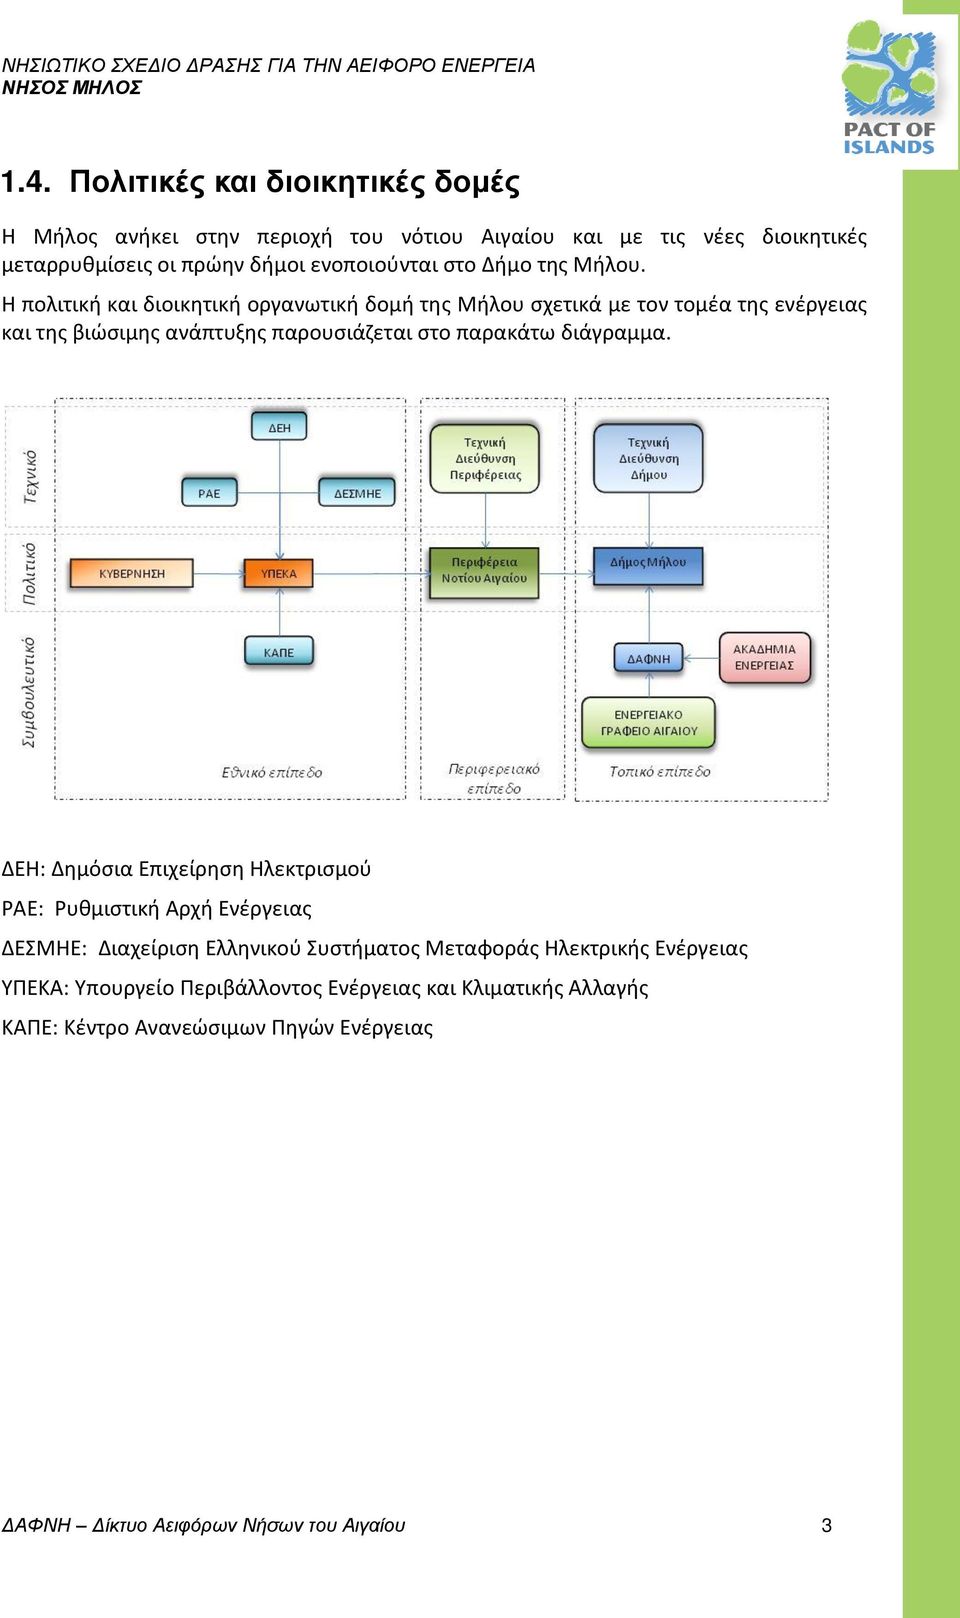 Η πολιτική και διοικητική οργανωτική δομή της Μήλου σχετικά με τον τομέα της ενέργειας και της βιώσιμης ανάπτυξης παρουσιάζεται στο παρακάτω διάγραμμα.